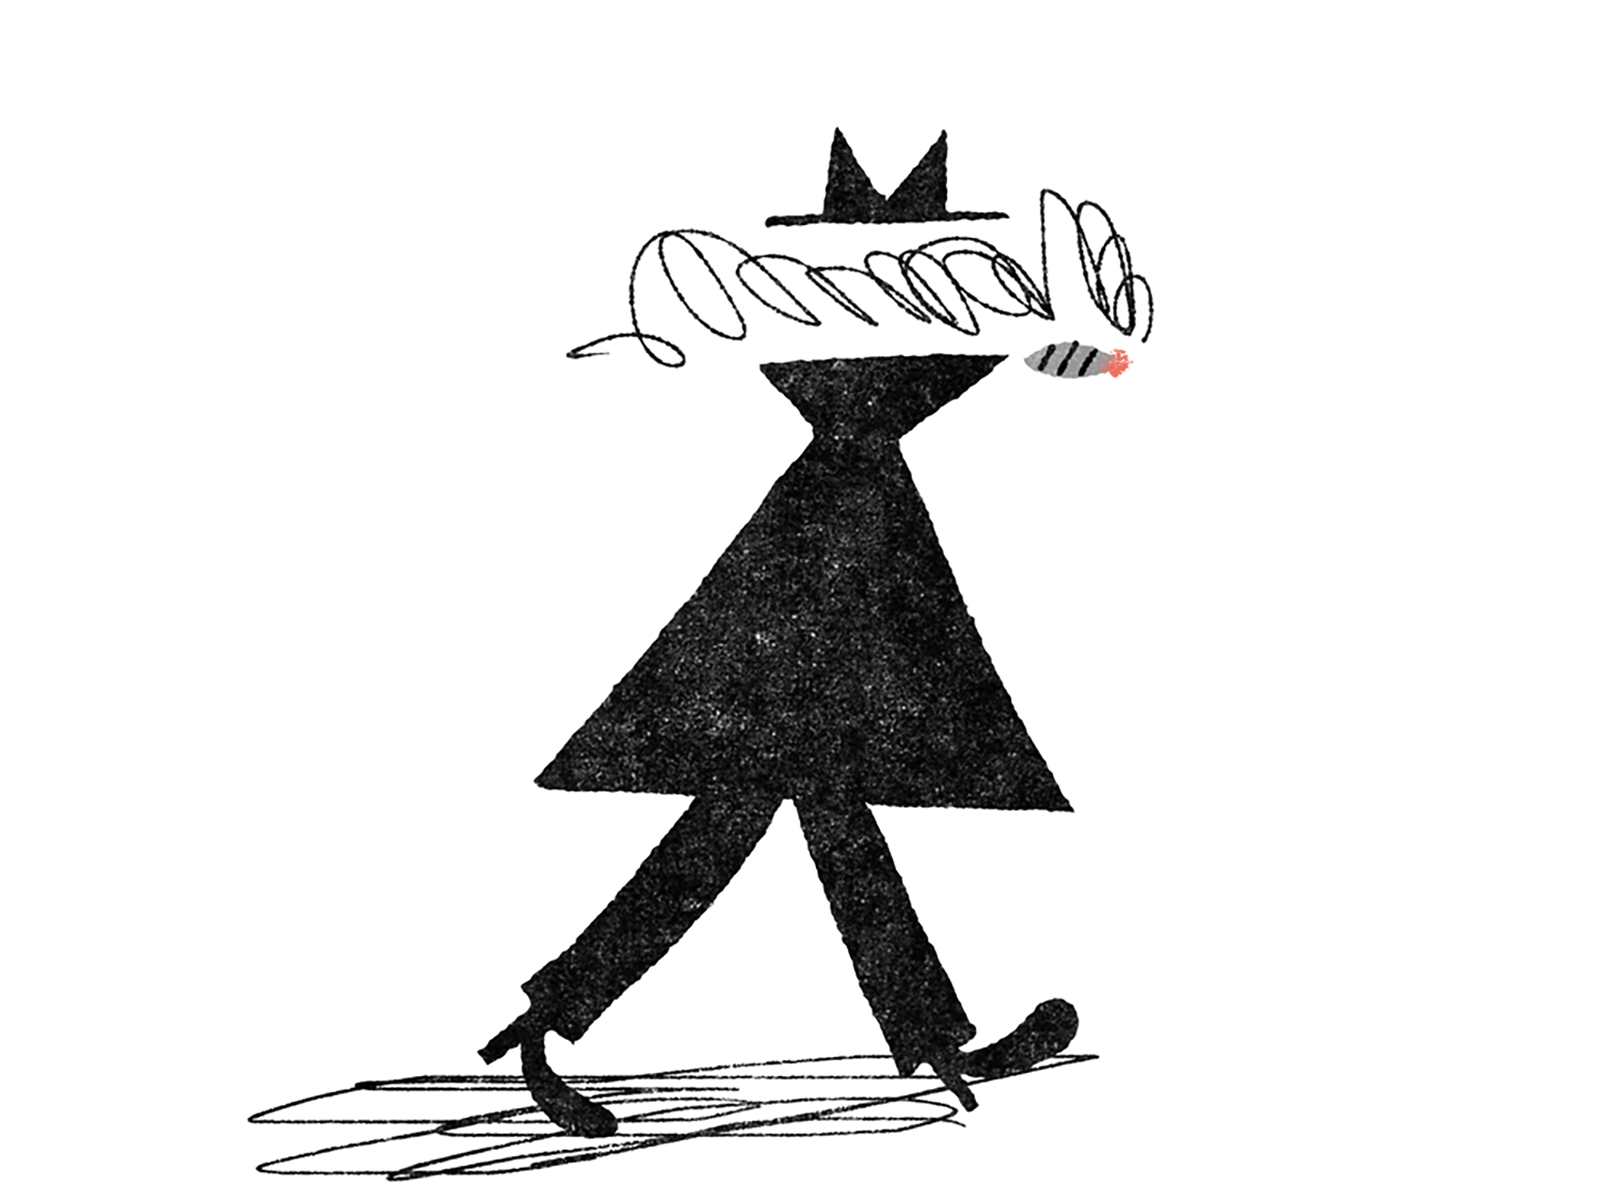 Walking Smoker